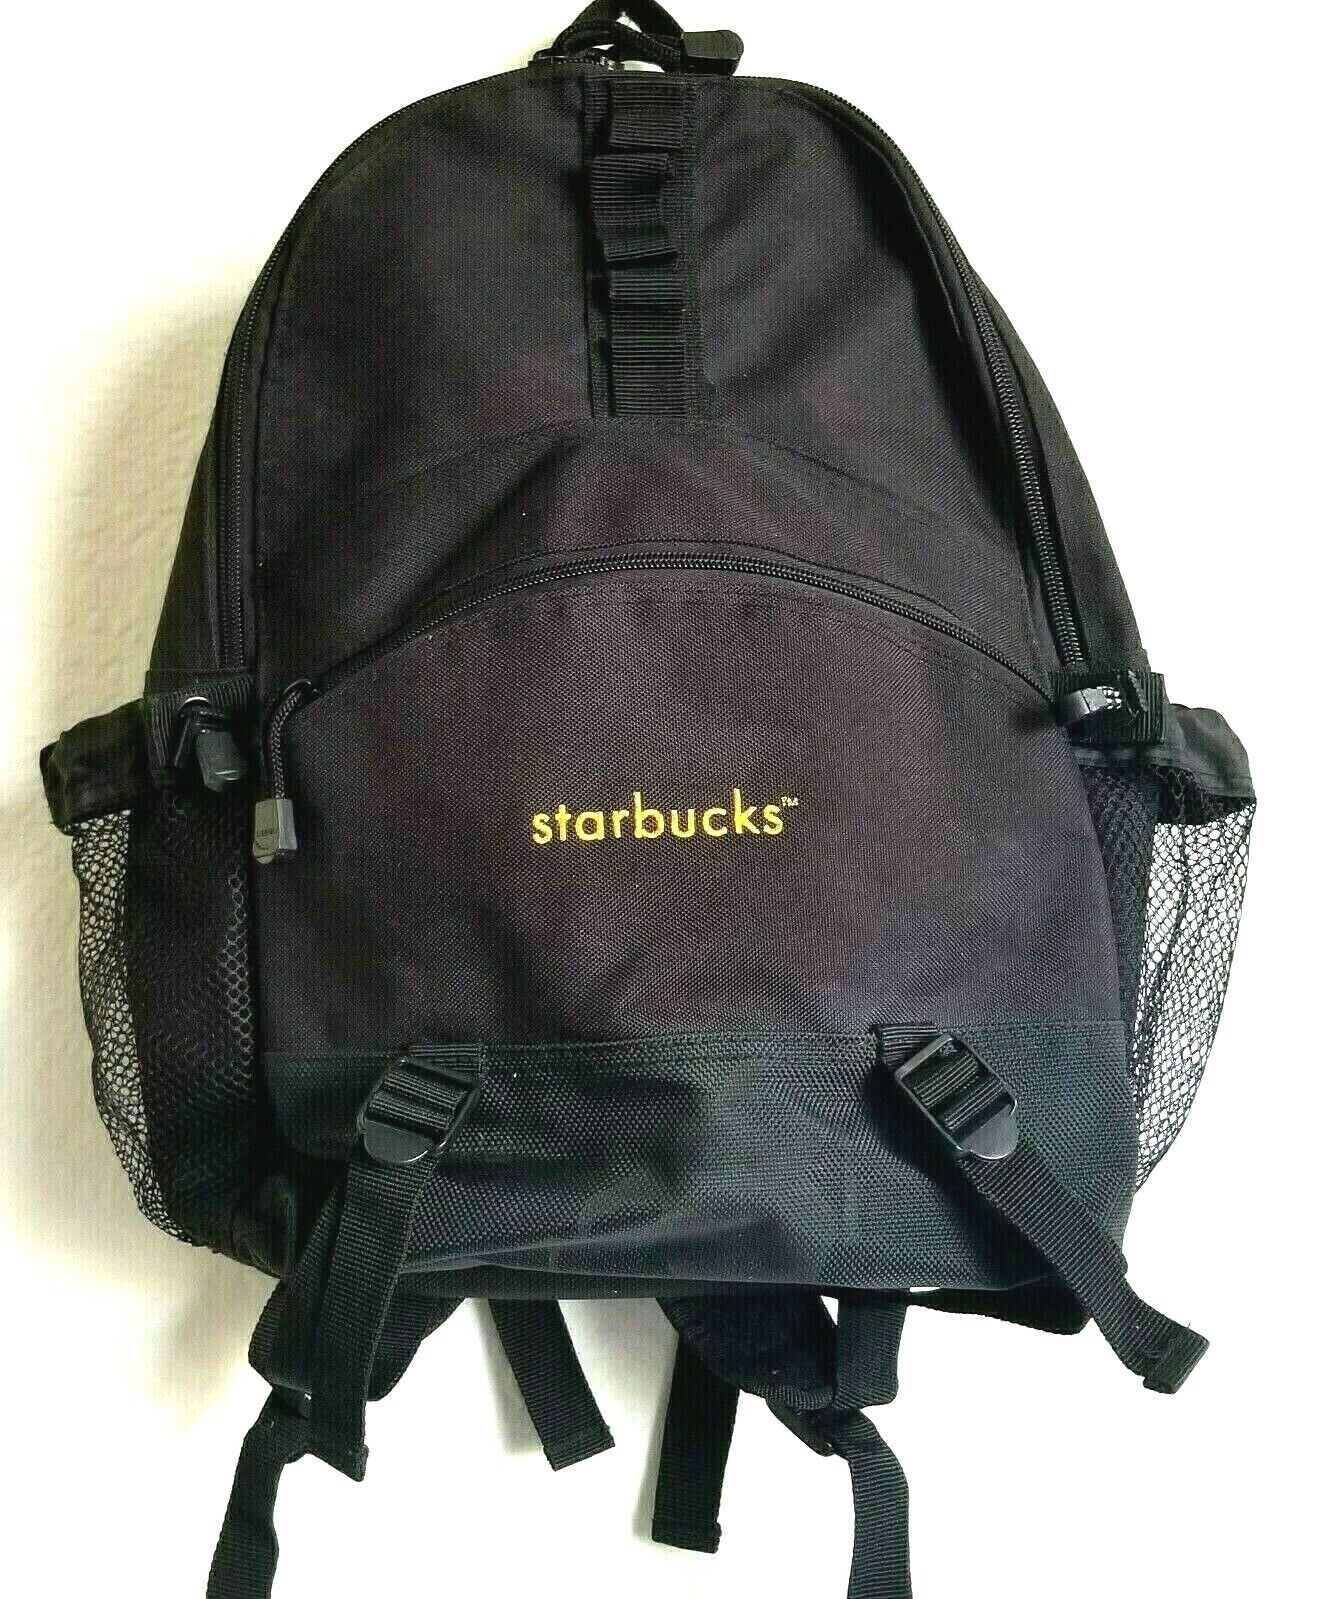 Starbucks Backpack Bag Nylon Expandable Multi Pocket & Compartments Black